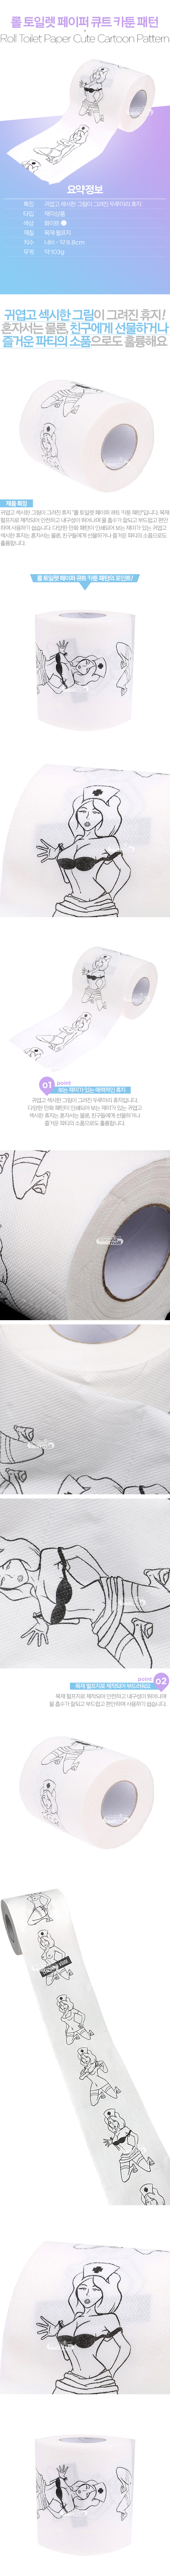 [일러스트 휴지] 롤 토일렛 페이퍼 큐트 카툰 패턴(Roll Toilet Paper Cute Cartoon Pattern)